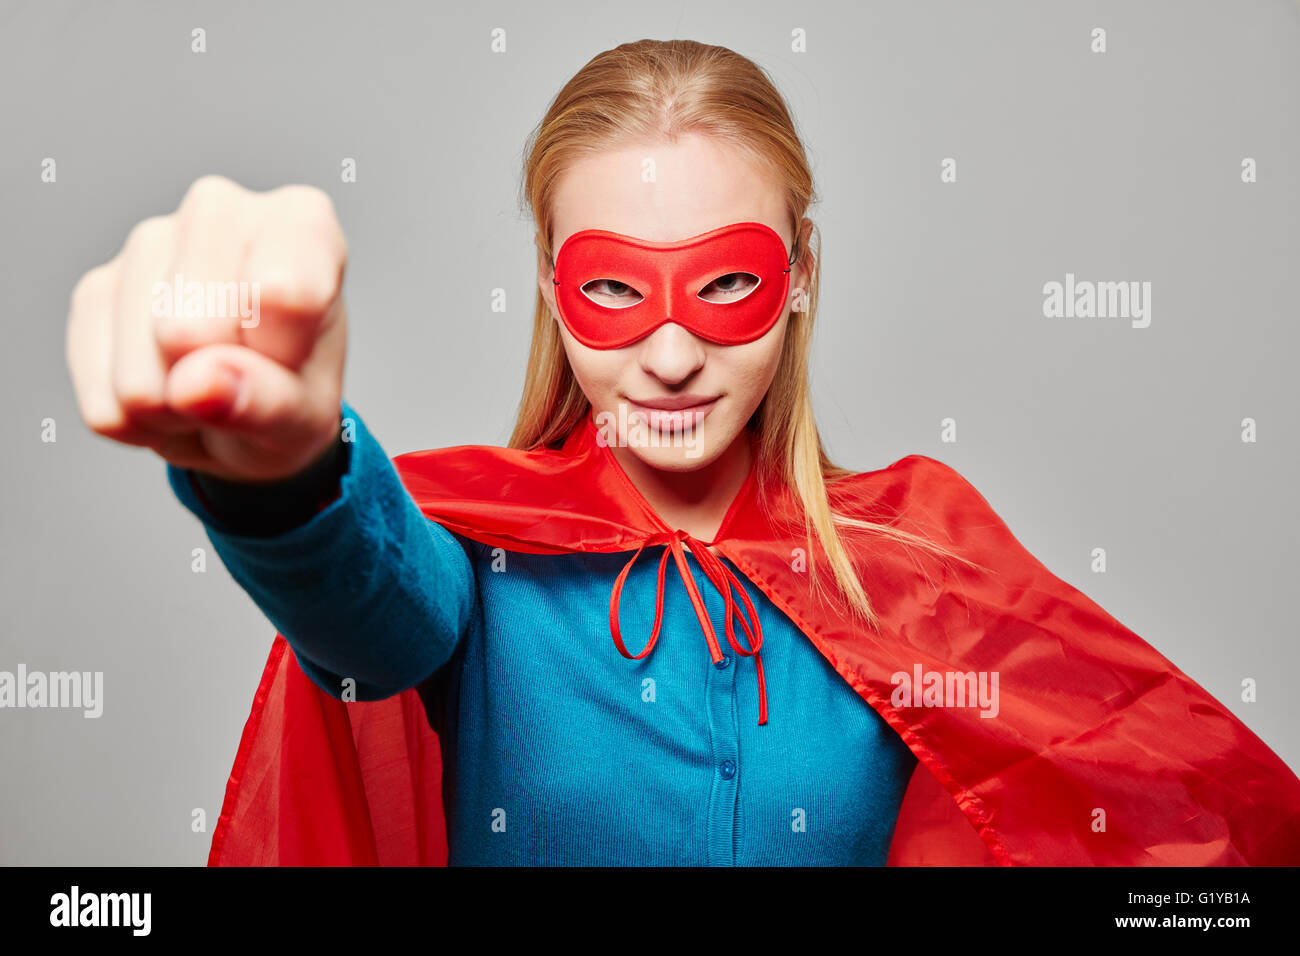 Superhero woman immagini e fotografie stock ad alta risoluzione